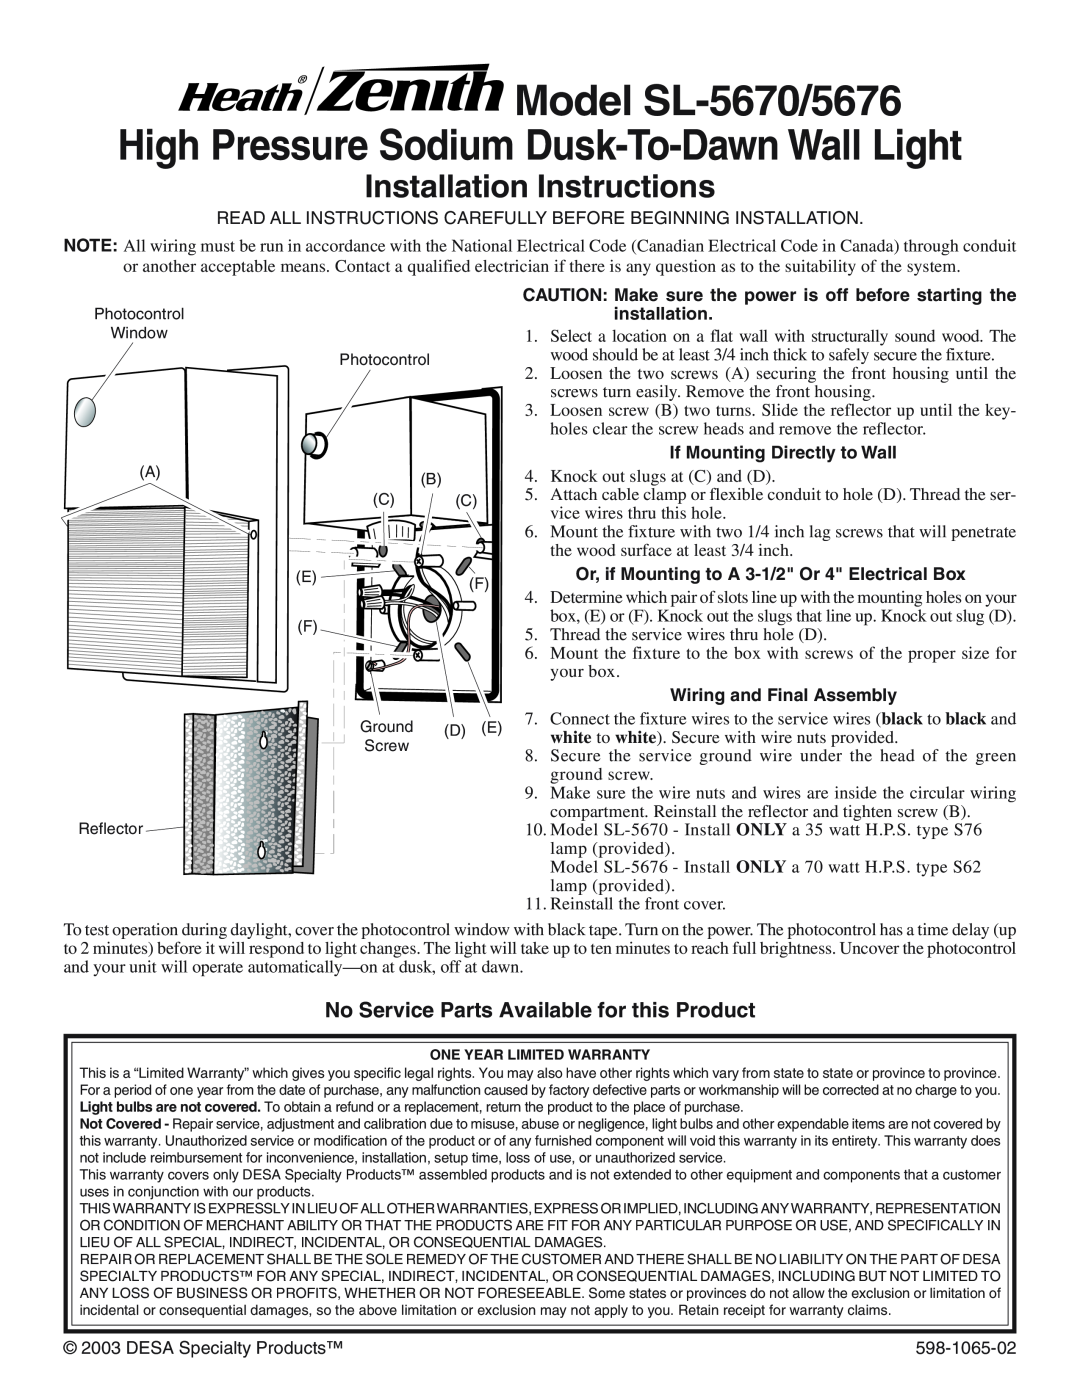 Heath Zenith SL-5676 installation instructions Model SL-5670/5676, High Pressure Sodium Dusk-To-Dawn Wall Light 